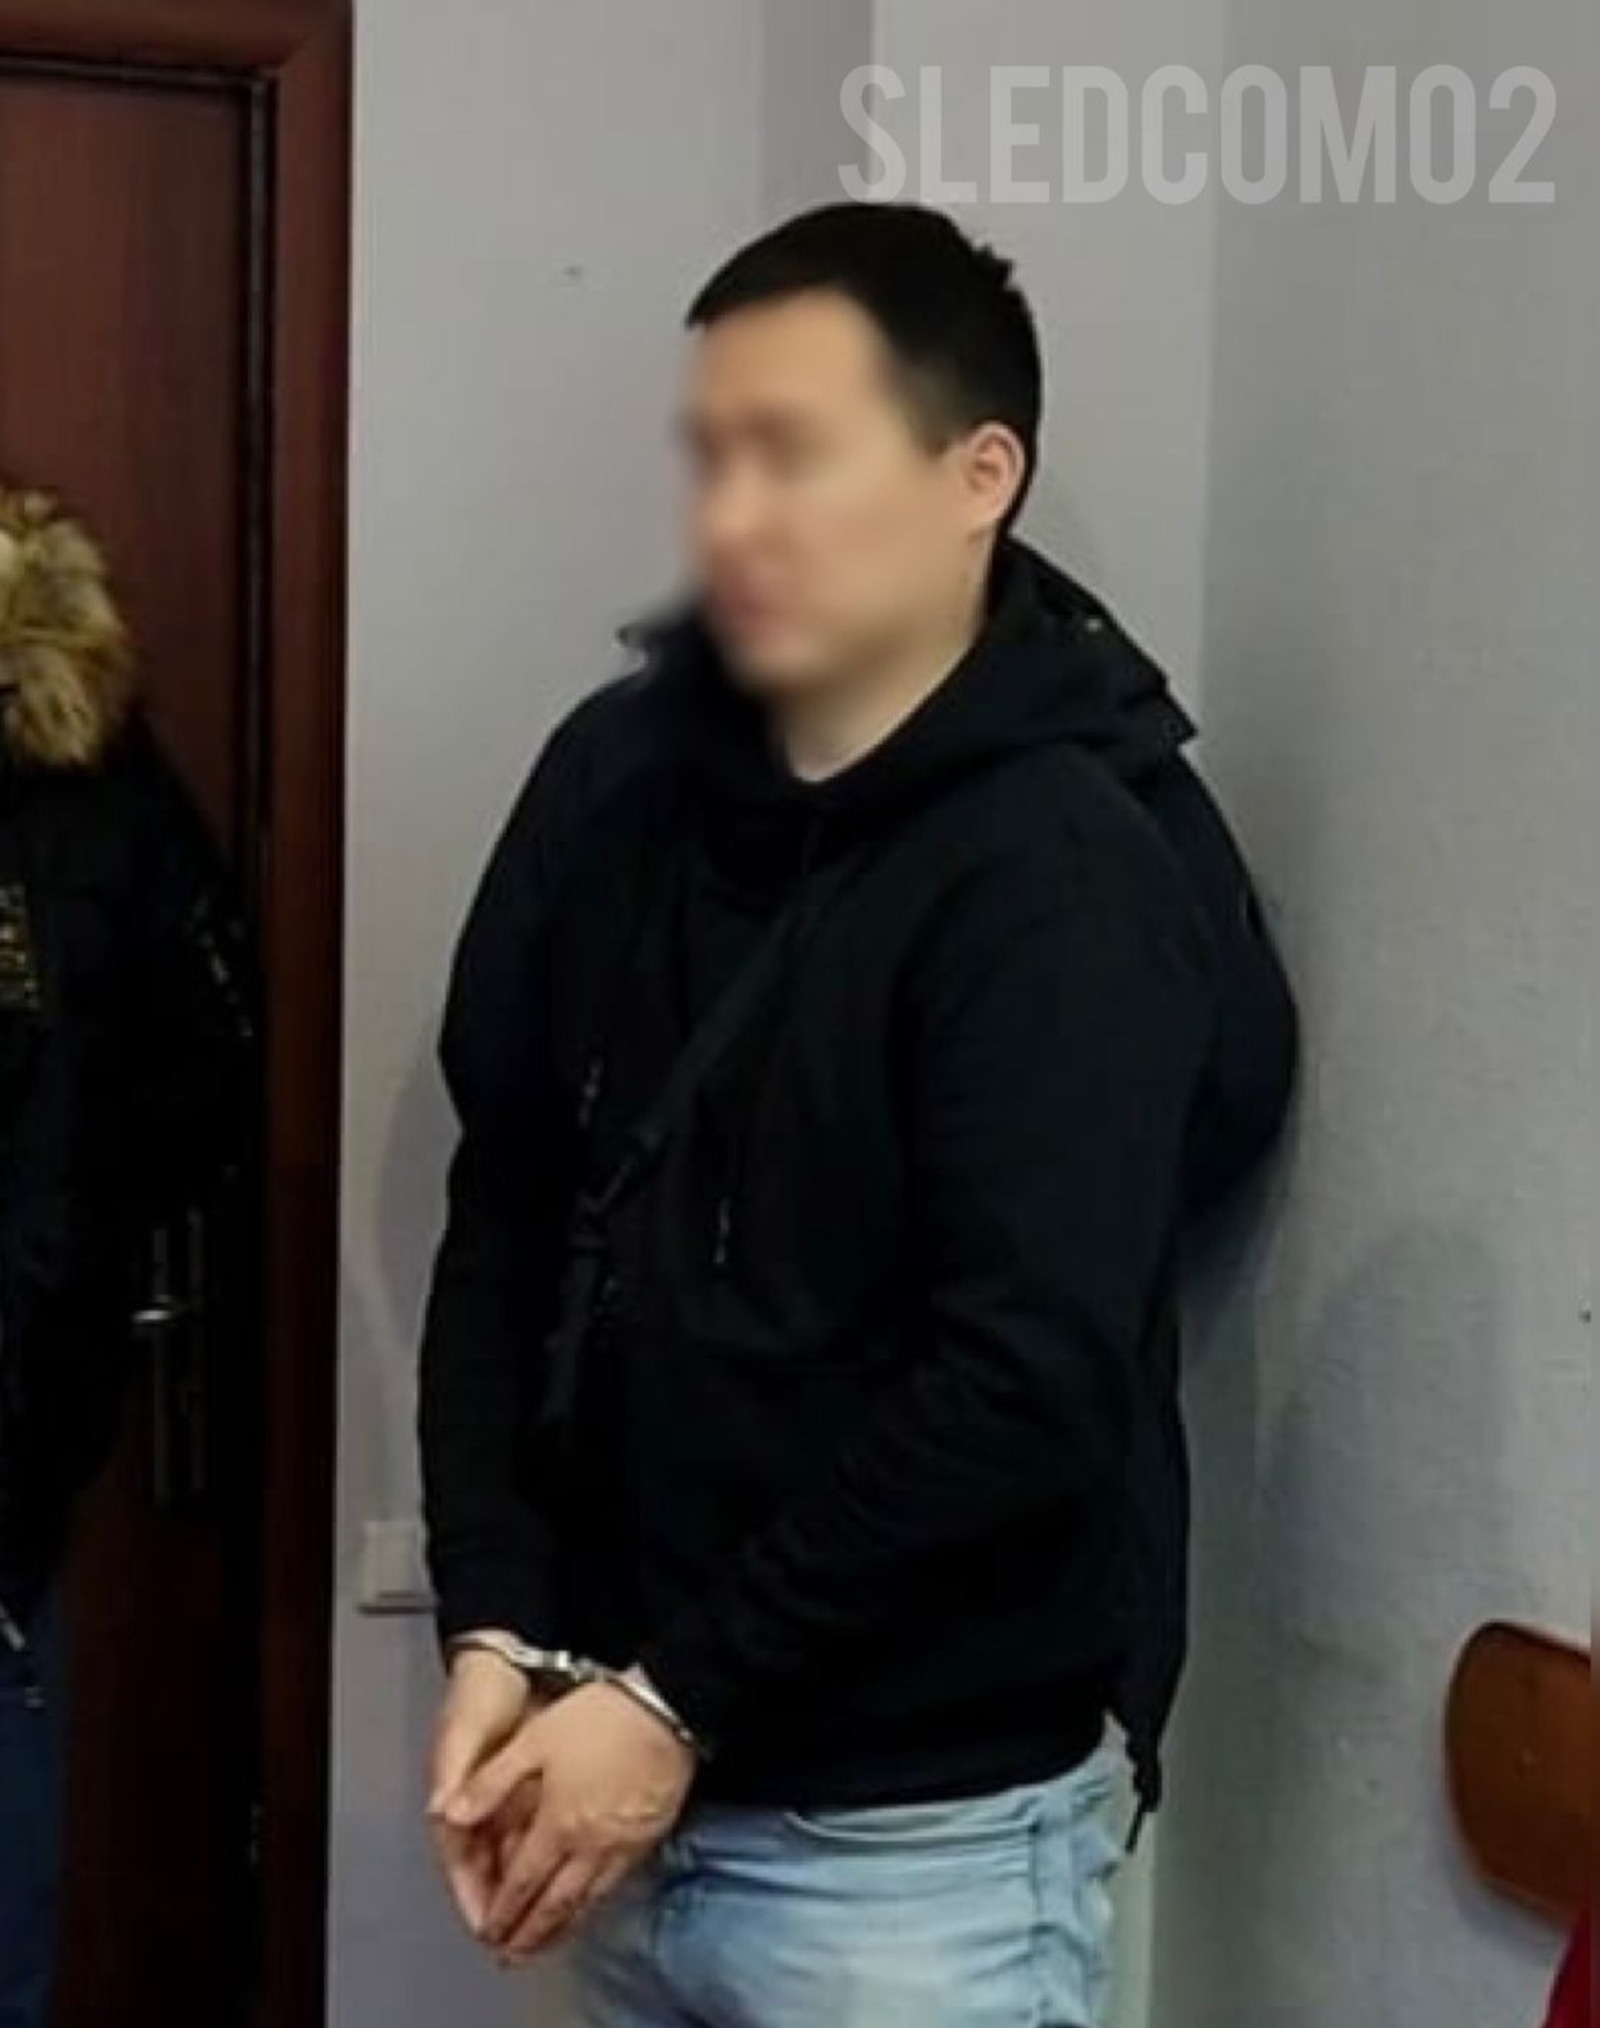 В аэропорту Уфы задержали предполагаемого педофила, совратившего девочку в лифте